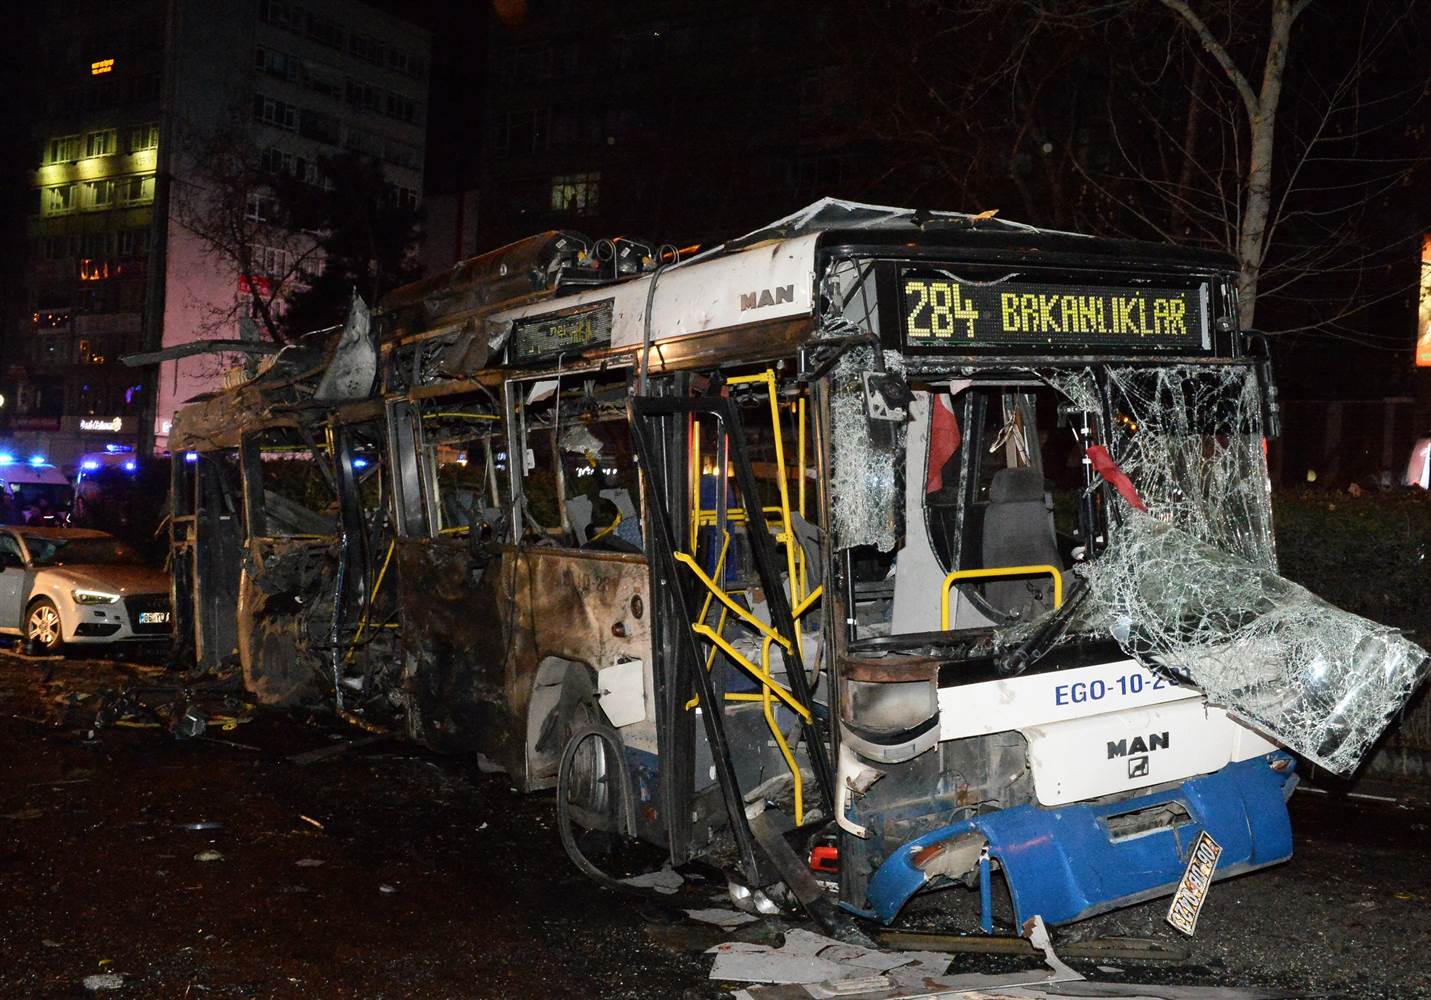 اولین تصویر منتشر شده از اتوبوس منفجر شده در آنکارا